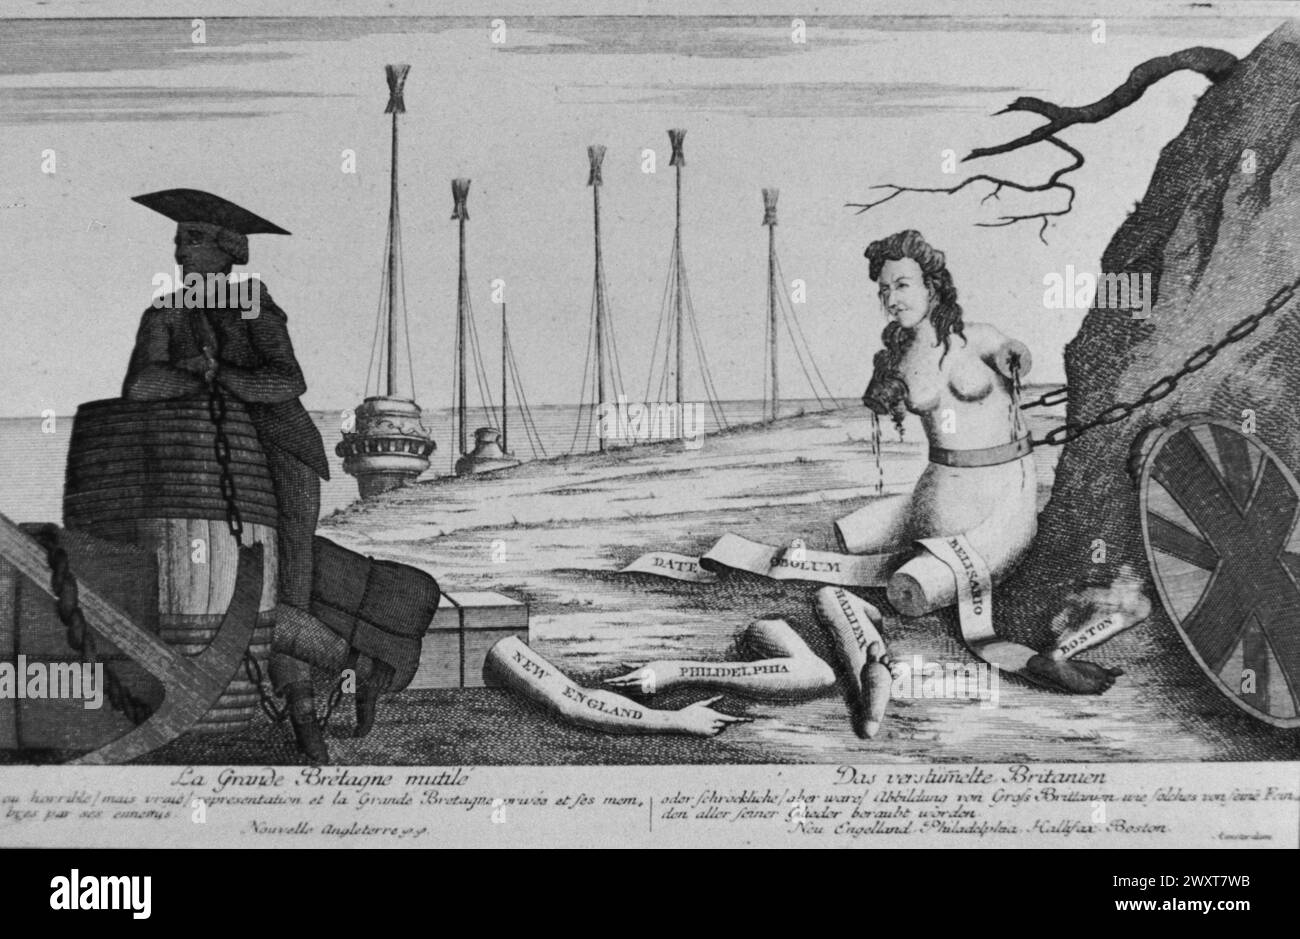 La Grande-Bretagne mutilée après l'indépendance des colonies nord-américaines, illustration de dessins animés, Angleterre 1783 Banque D'Images